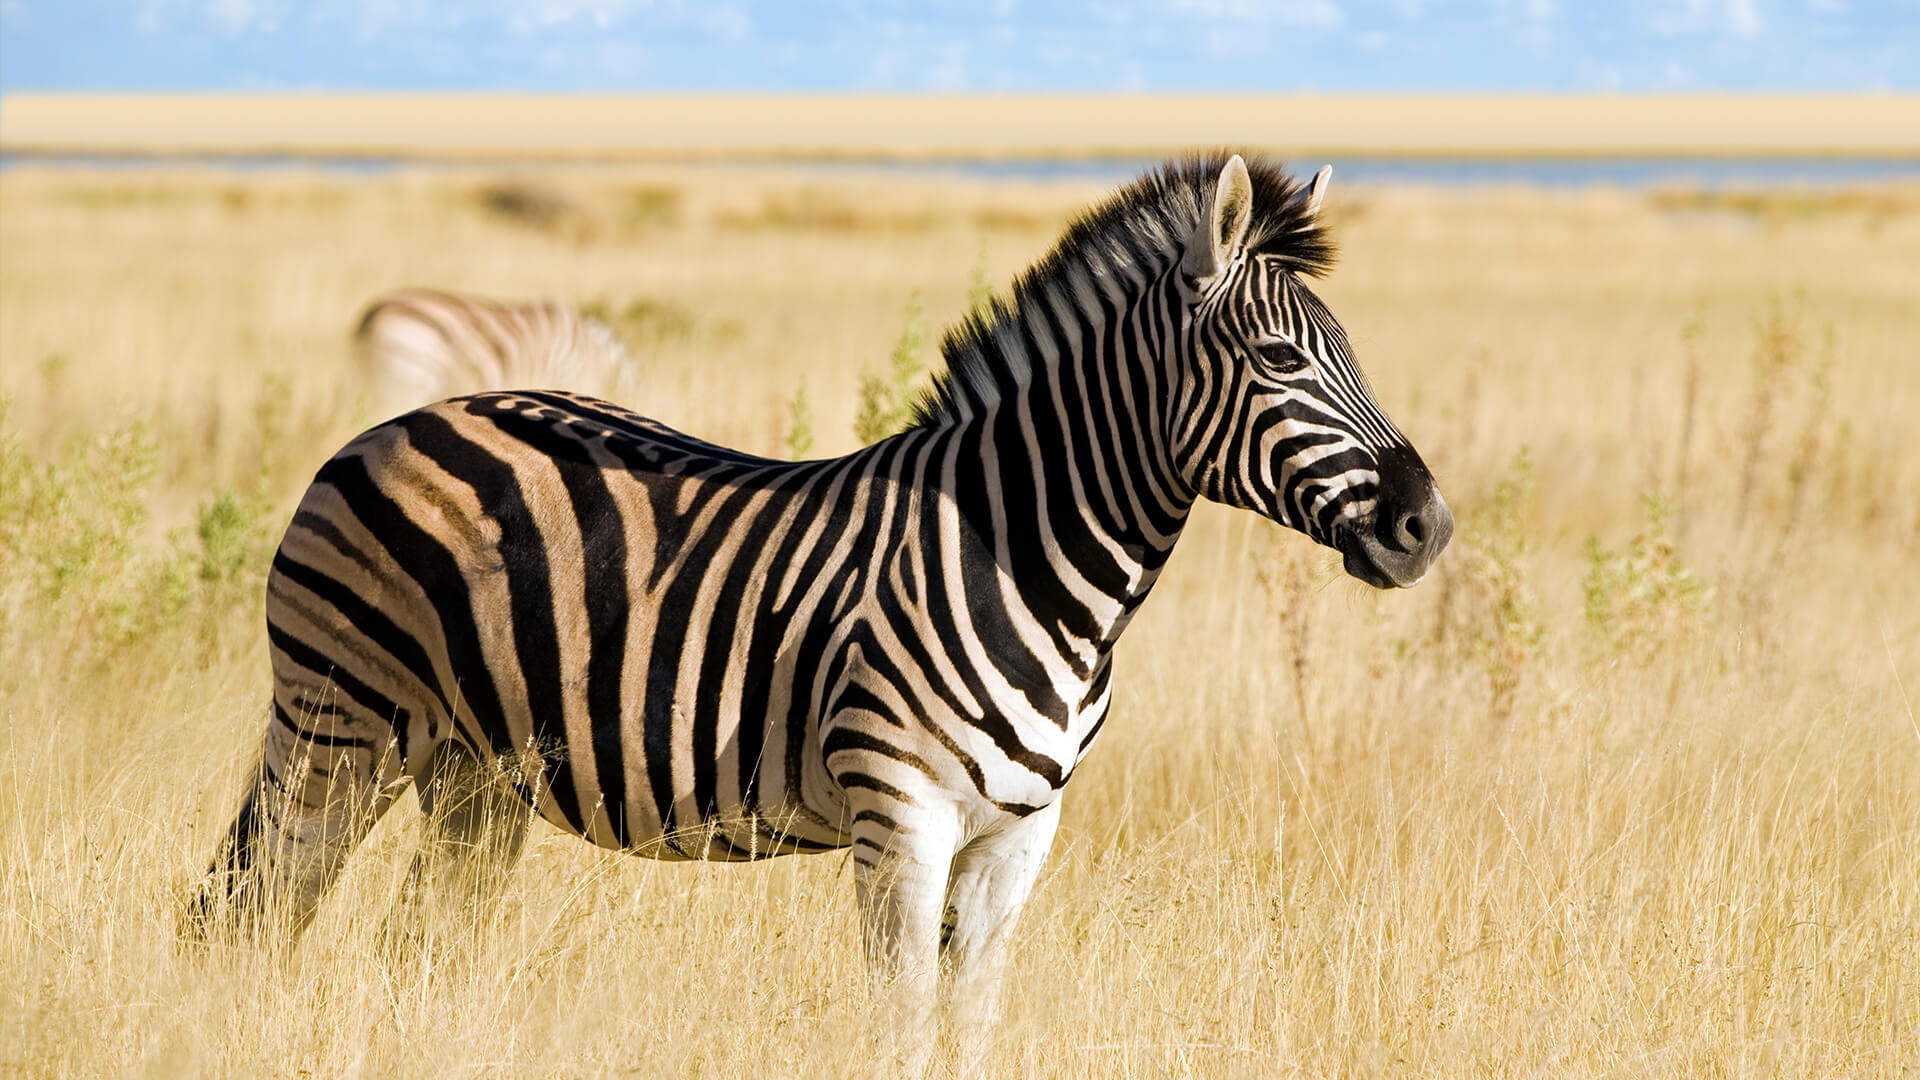 gambar zebra hd